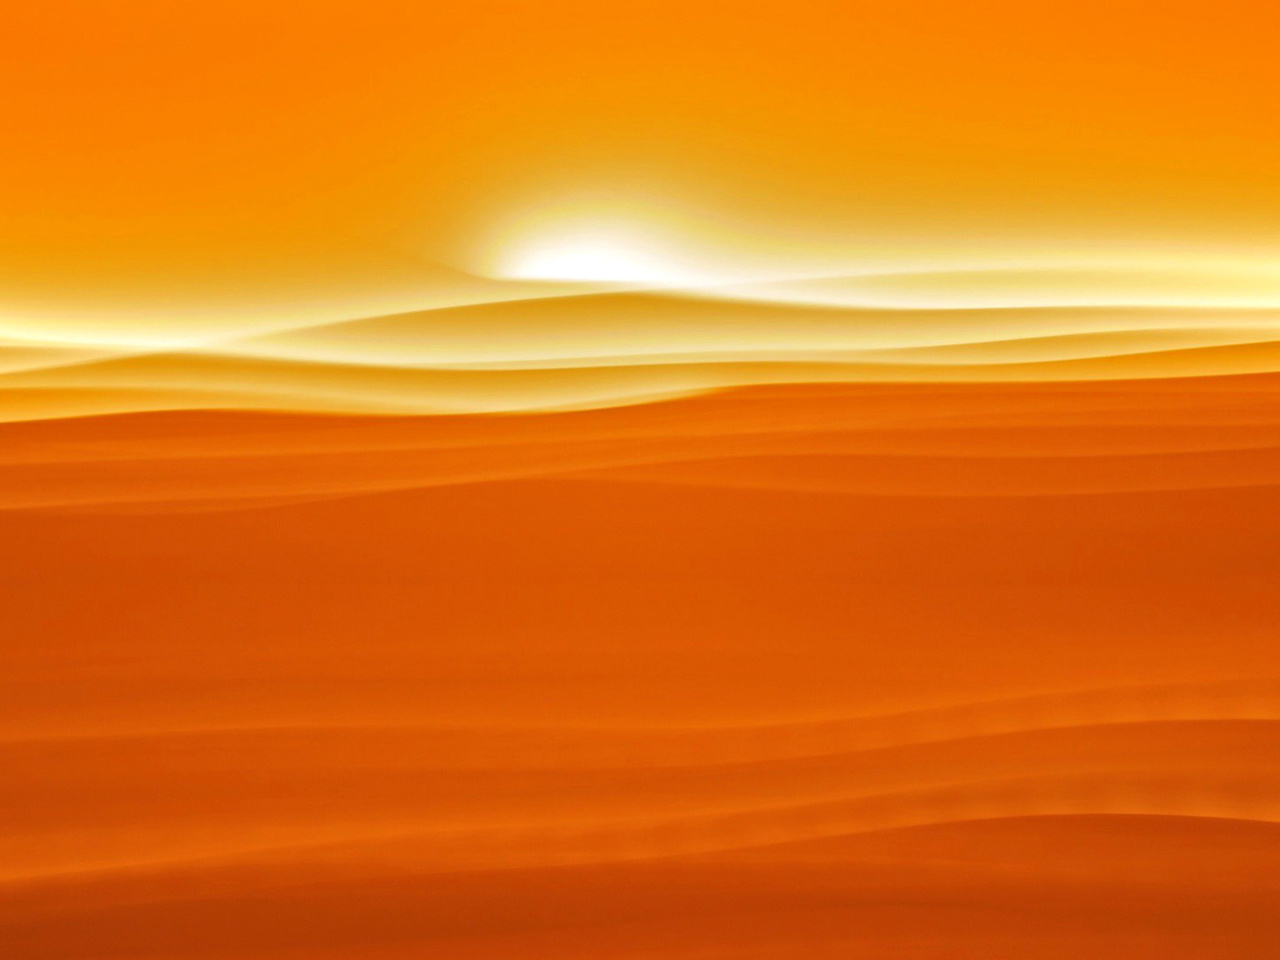 Orange Sky and Desert wallpaper 1280x960